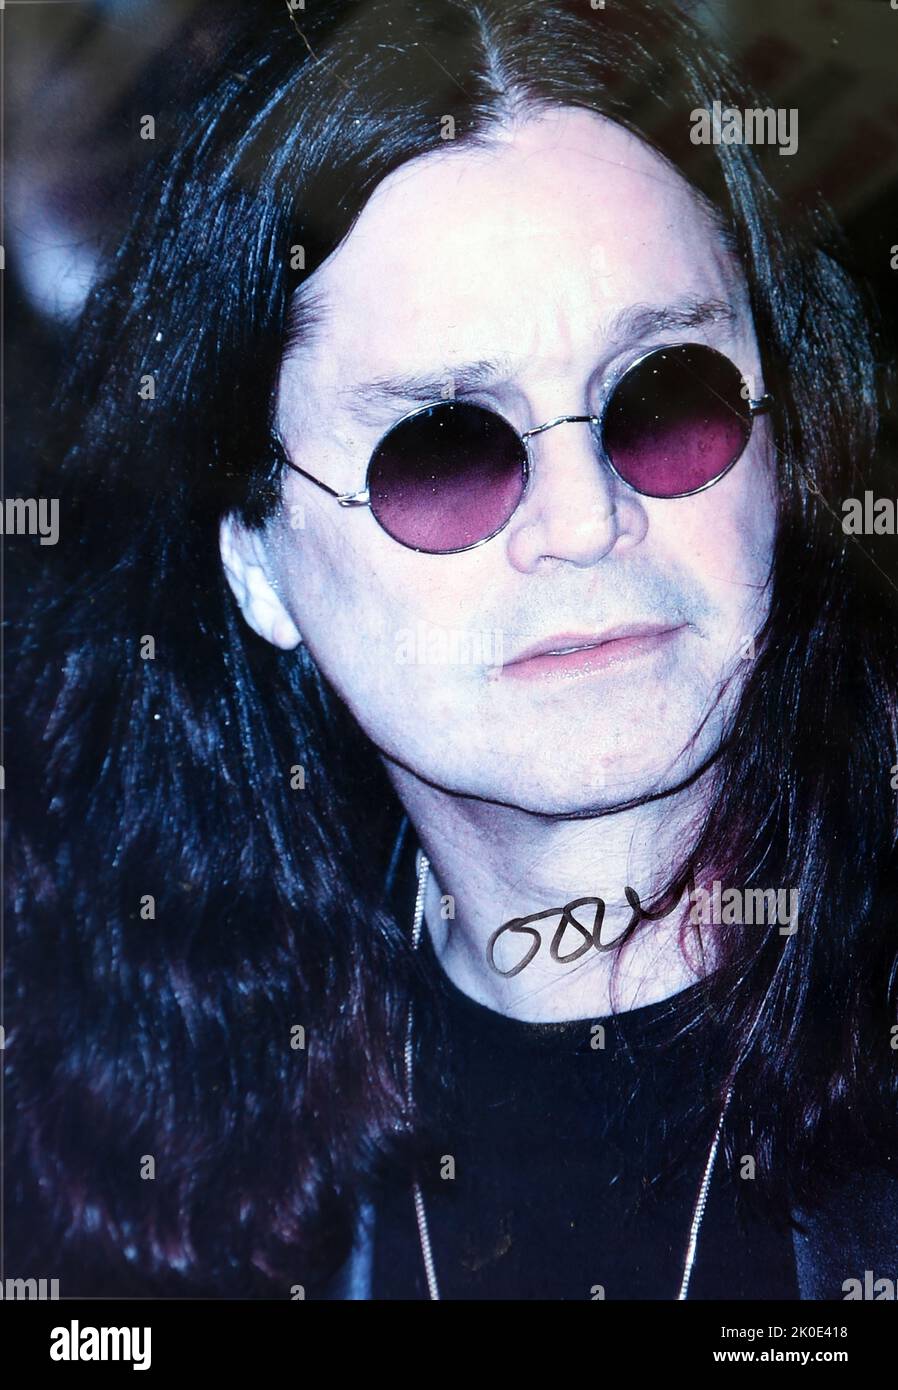 John Michael 'Ozzy' Osbourne (Londra, 1948) è un . Si alzò in evidenza durante gli anni '1970s come cantante principale della band heavy metal Black Sabbath, durante il quale prese il soprannome di 'Prince of Darkness'. Foto Stock